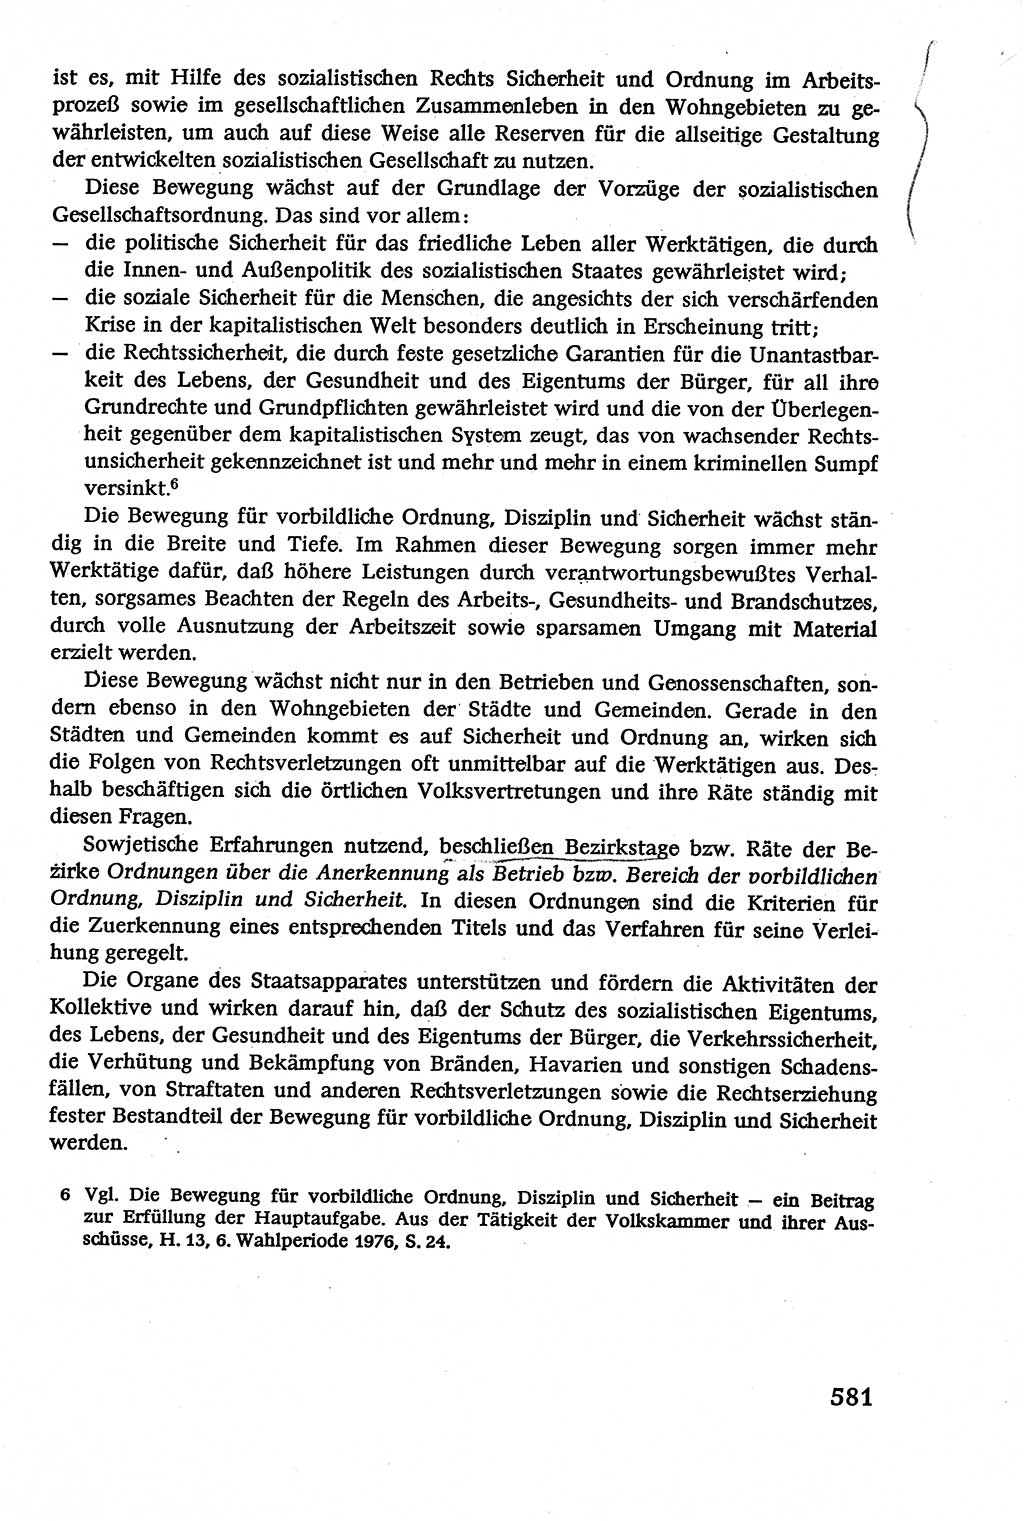 Verwaltungsrecht [Deutsche Demokratische Republik (DDR)], Lehrbuch 1979, Seite 581 (Verw.-R. DDR Lb. 1979, S. 581)